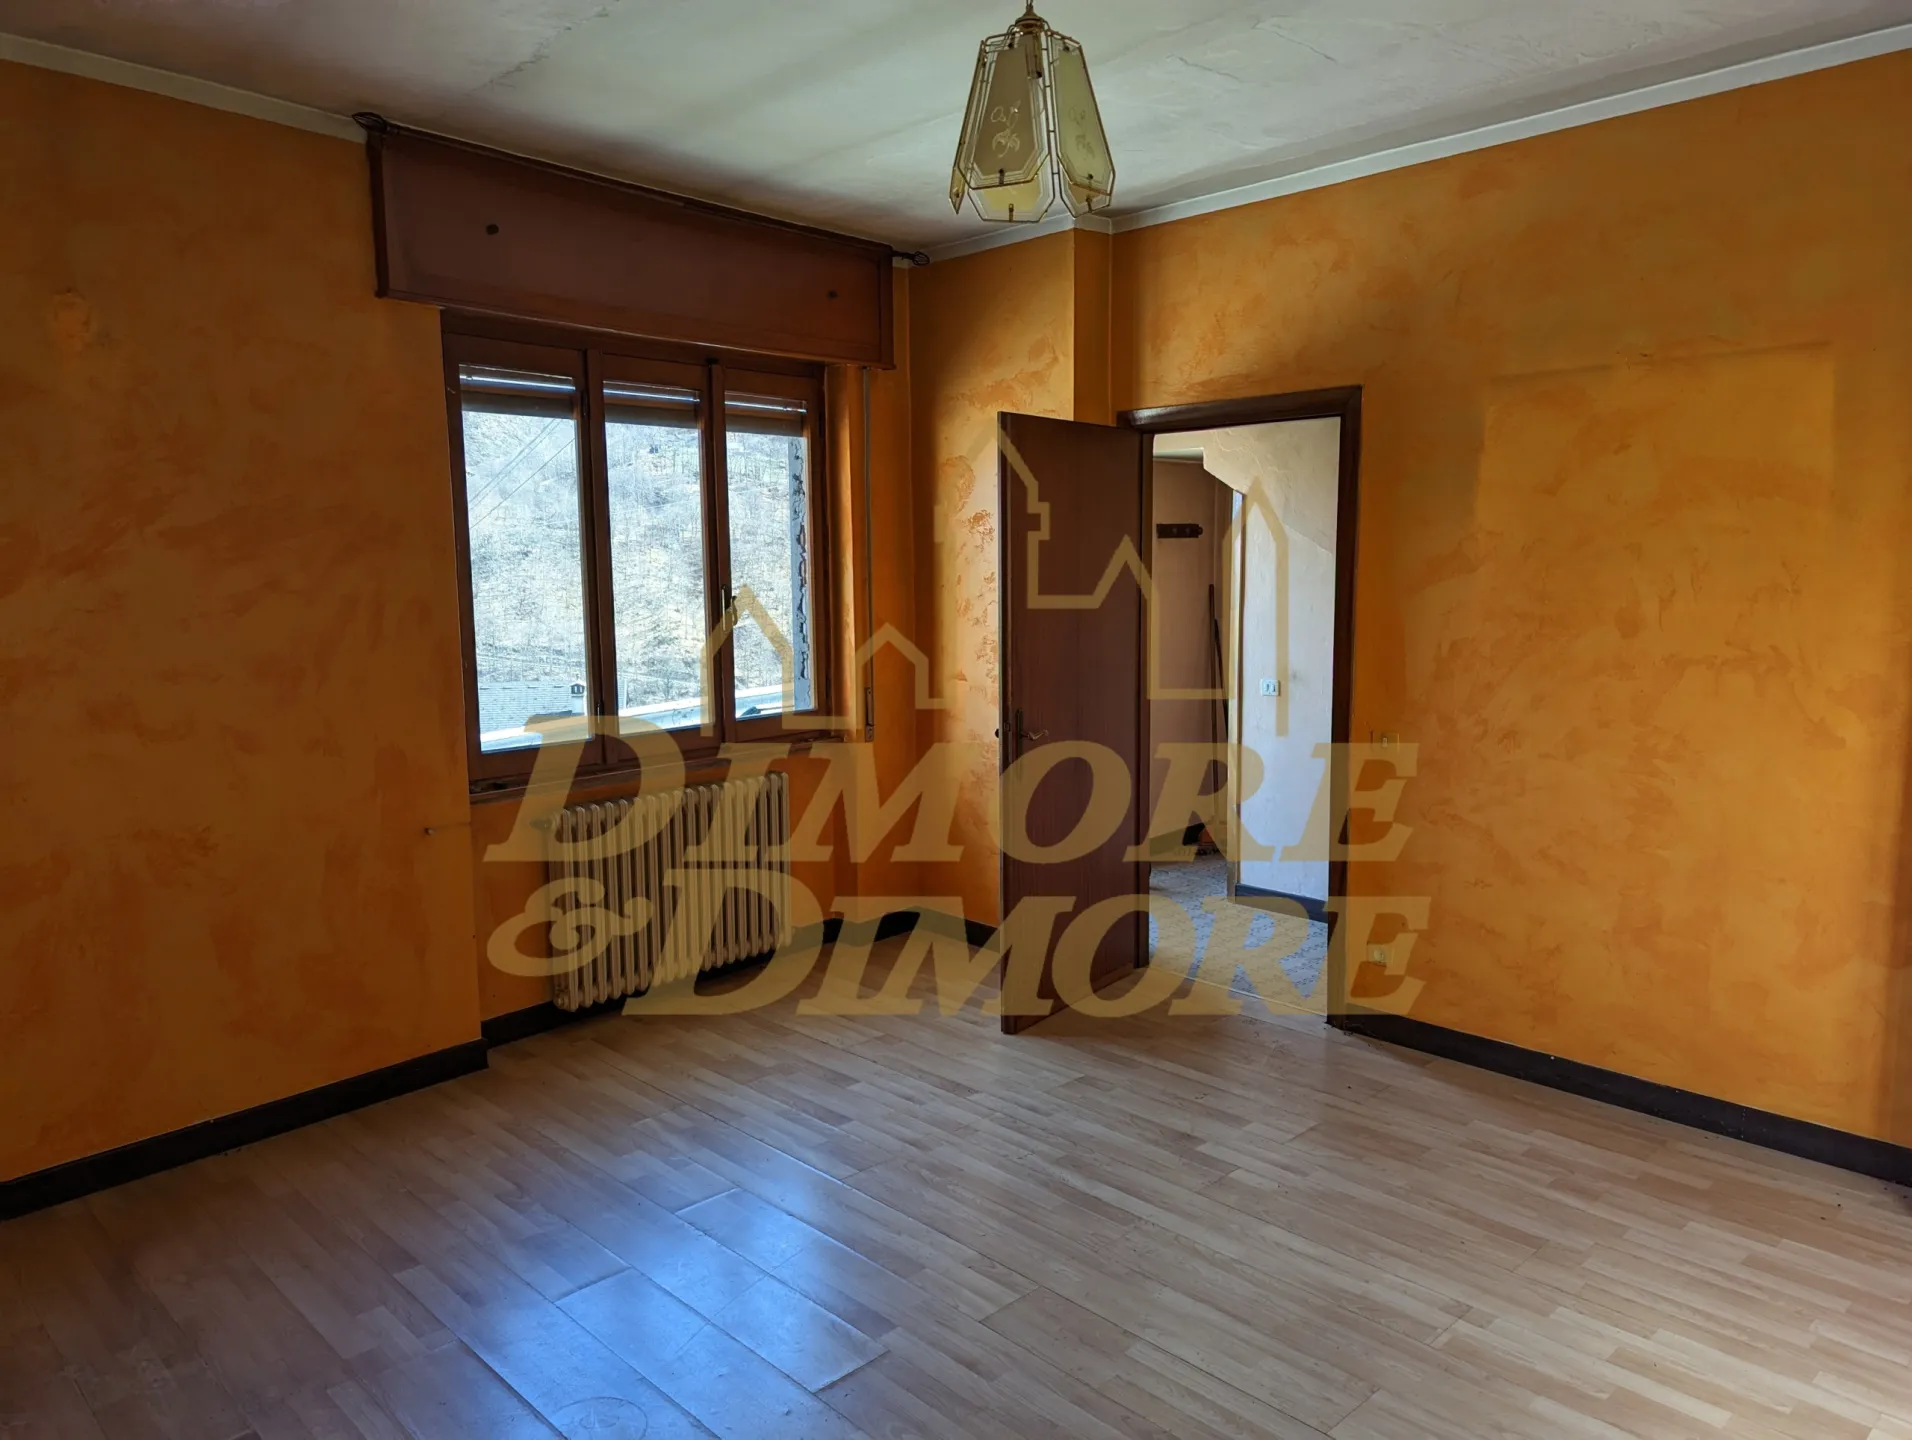 Immagine per Villa in vendita a Calasca-Castiglione via Vigino